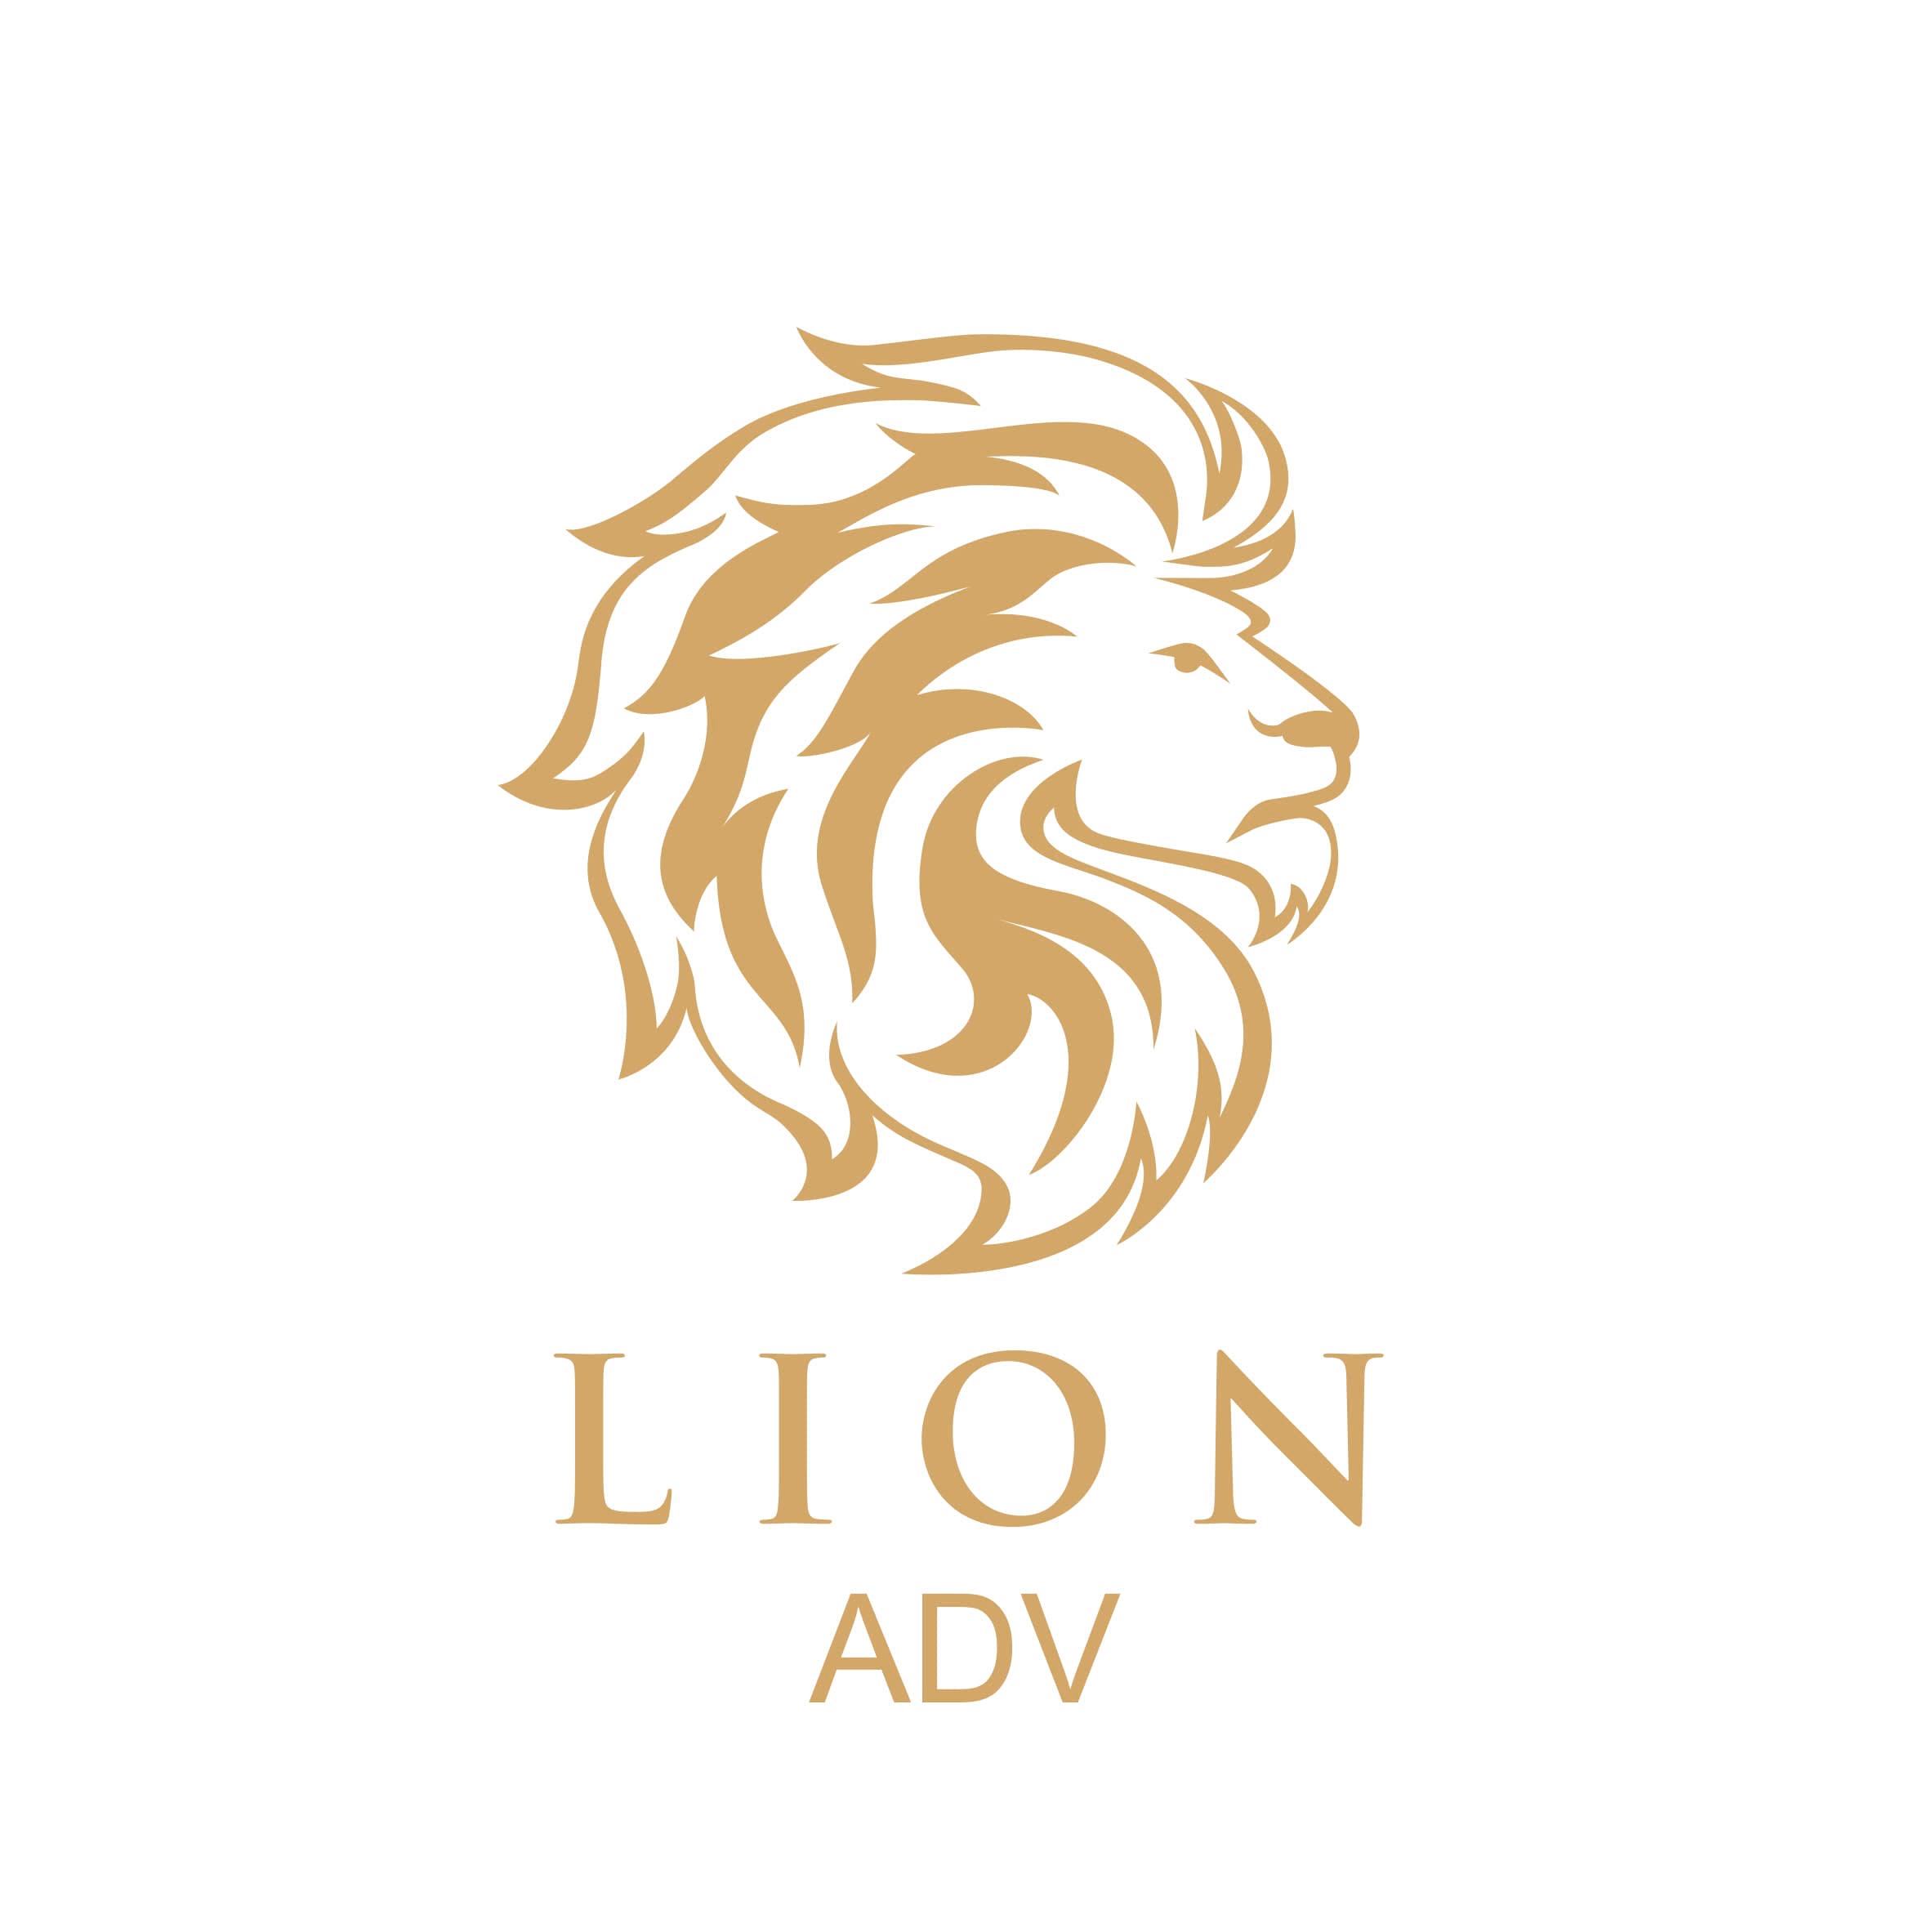 Lion Adv